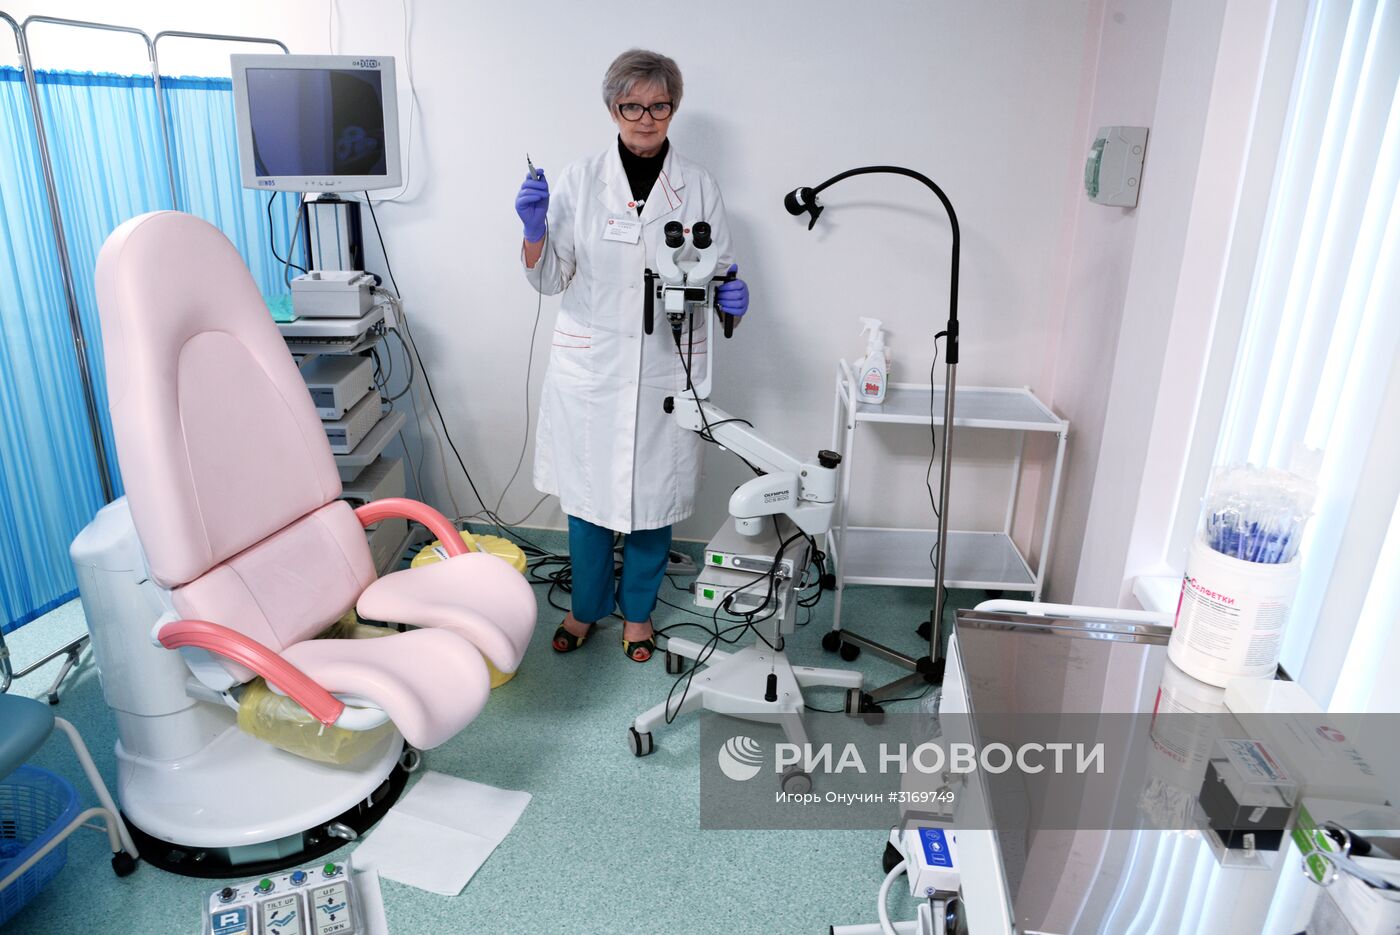 Российско-японский медицинский центр "Саико" в Хабаровске